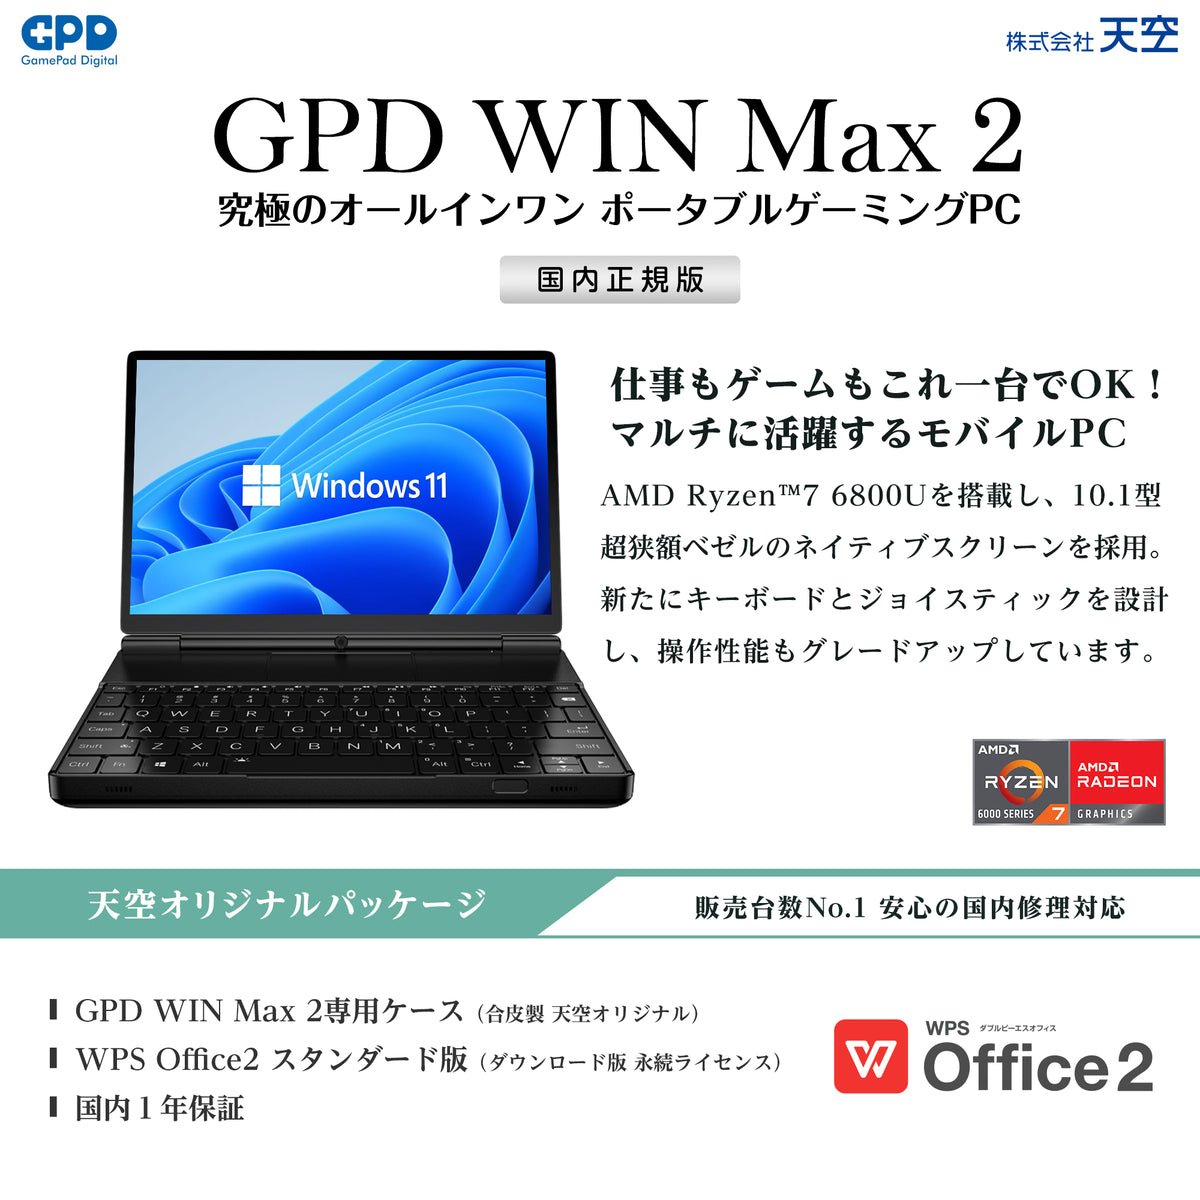 GPD WIN Max クラウドファンディング版 - PC/タブレット